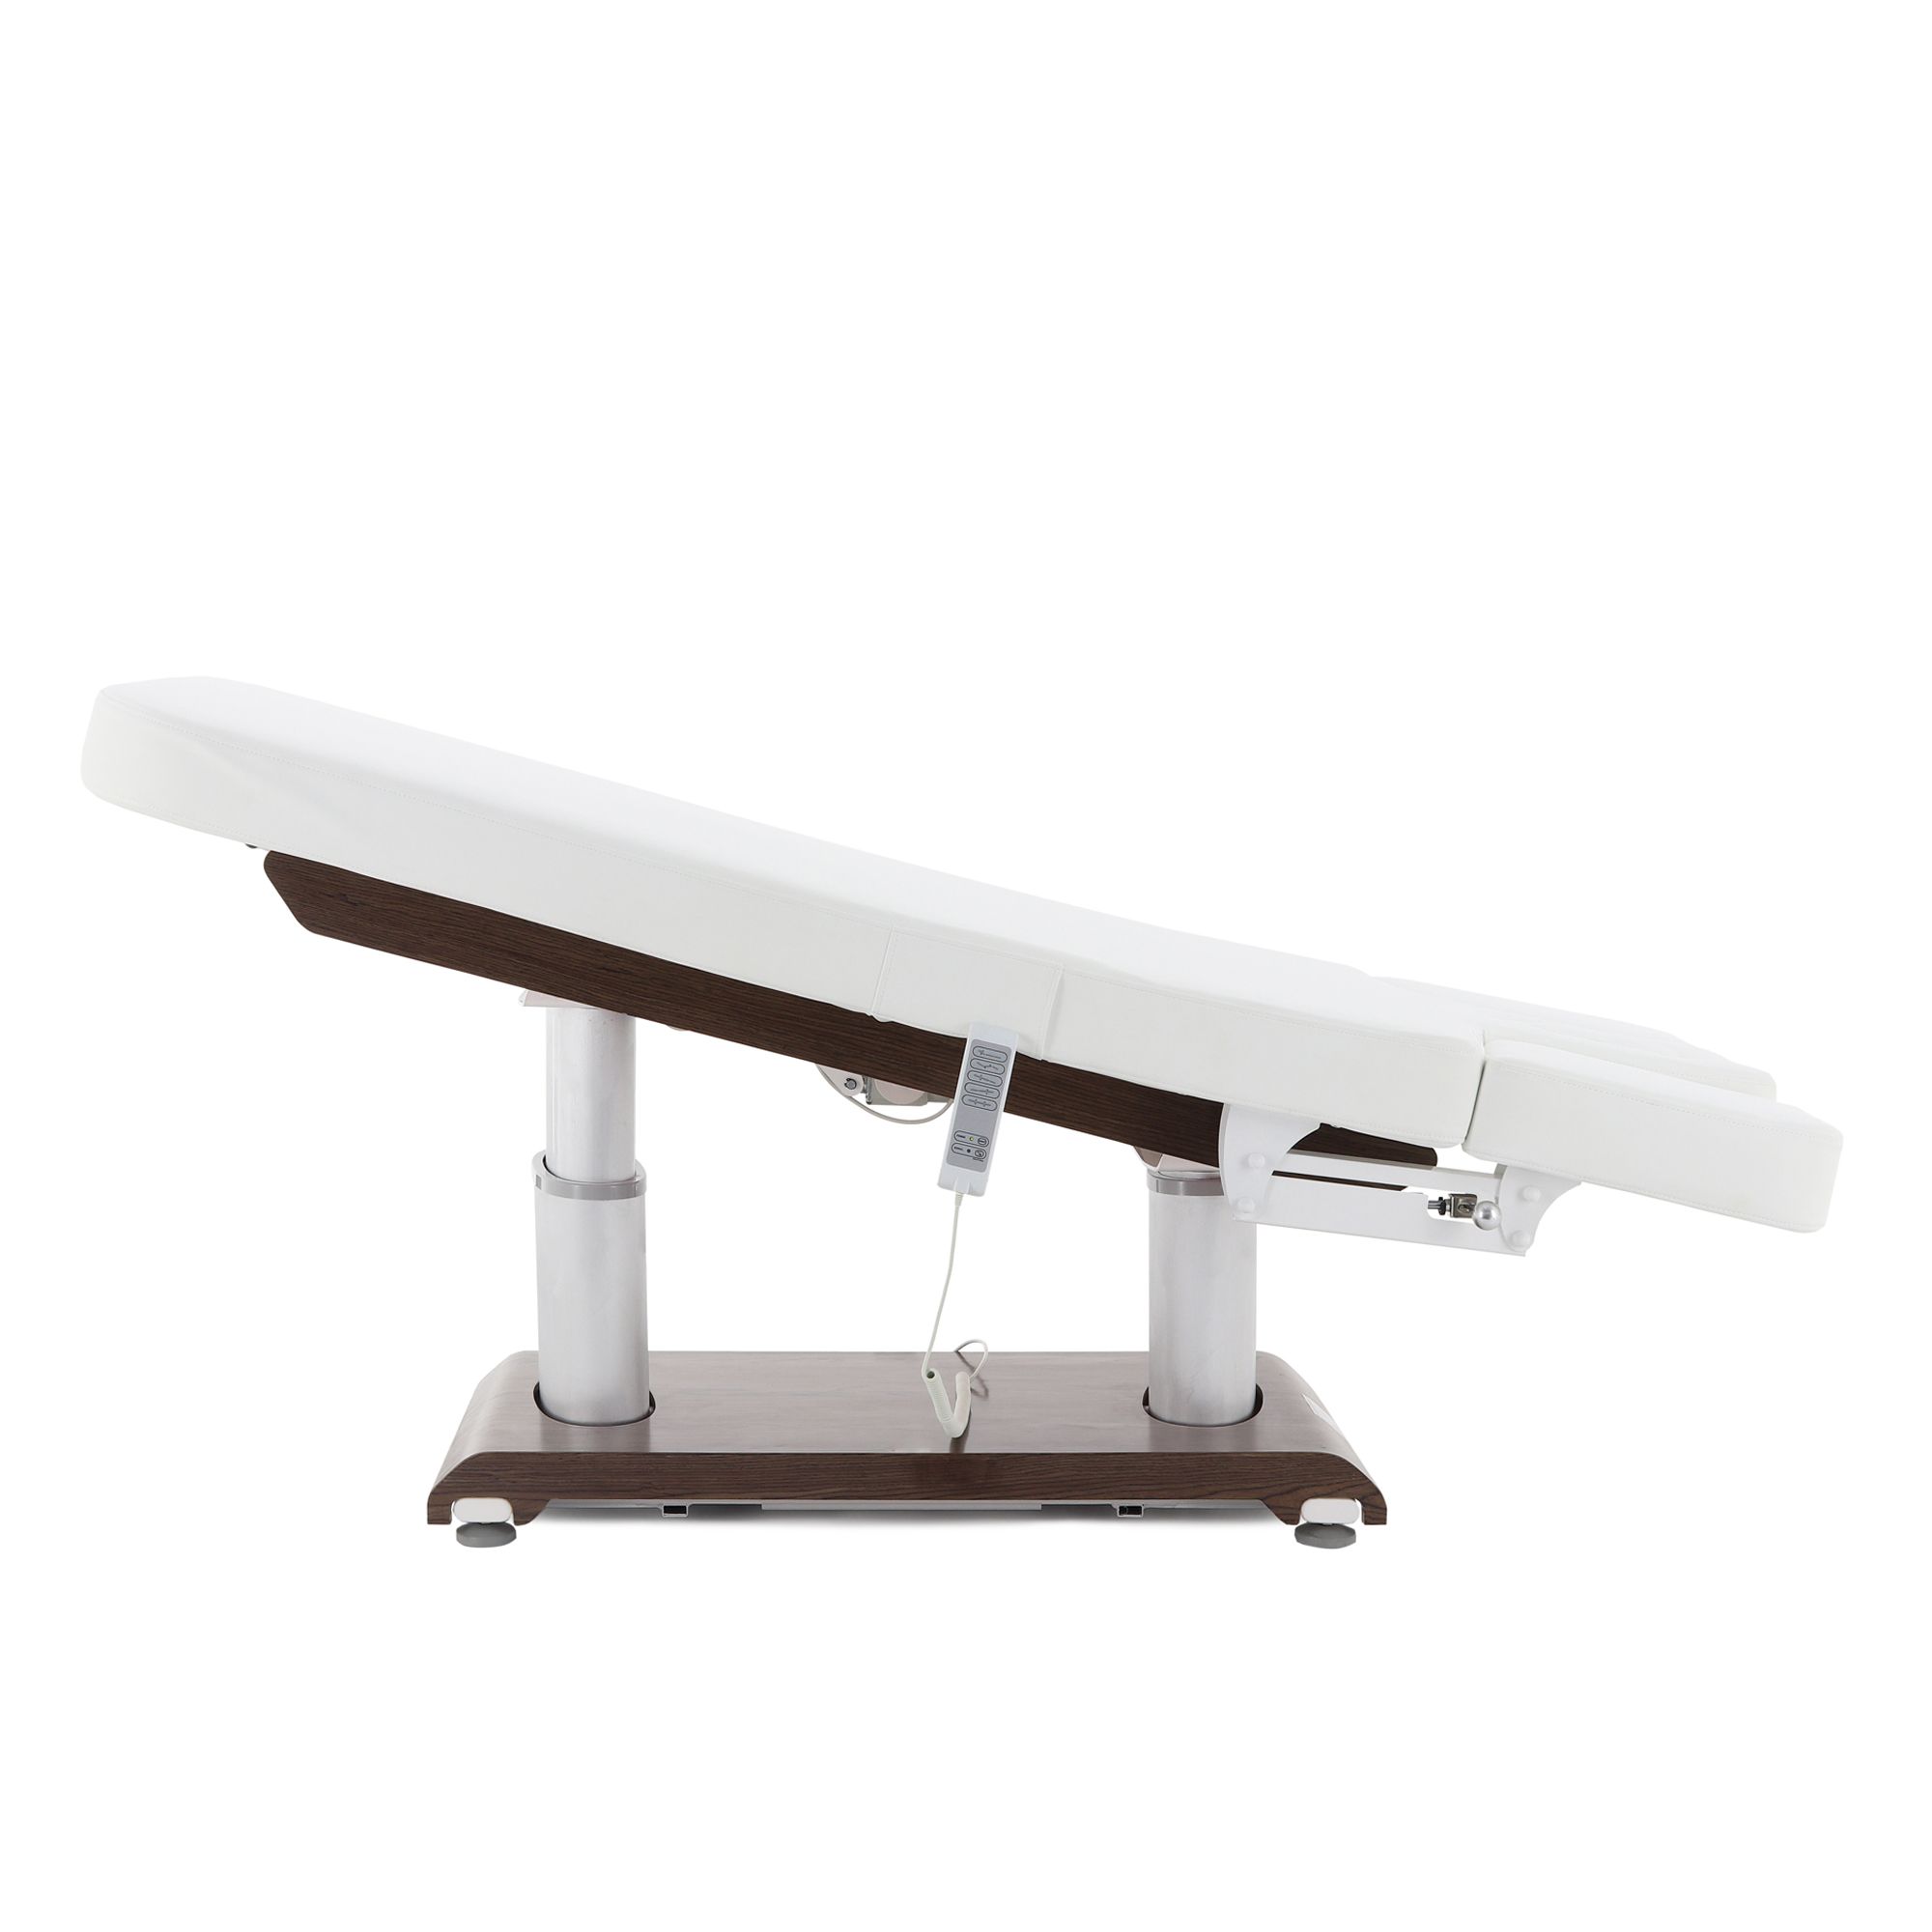 Массажный стол с электроприводом ММКМ-2 (ко-152д-02), цвет белый. Кресло косметологическое (массажное) med-mos ММКМ-2 ко-157д-00. Массажный стол Novocom 2234a MMKM-2. Электрический стол.